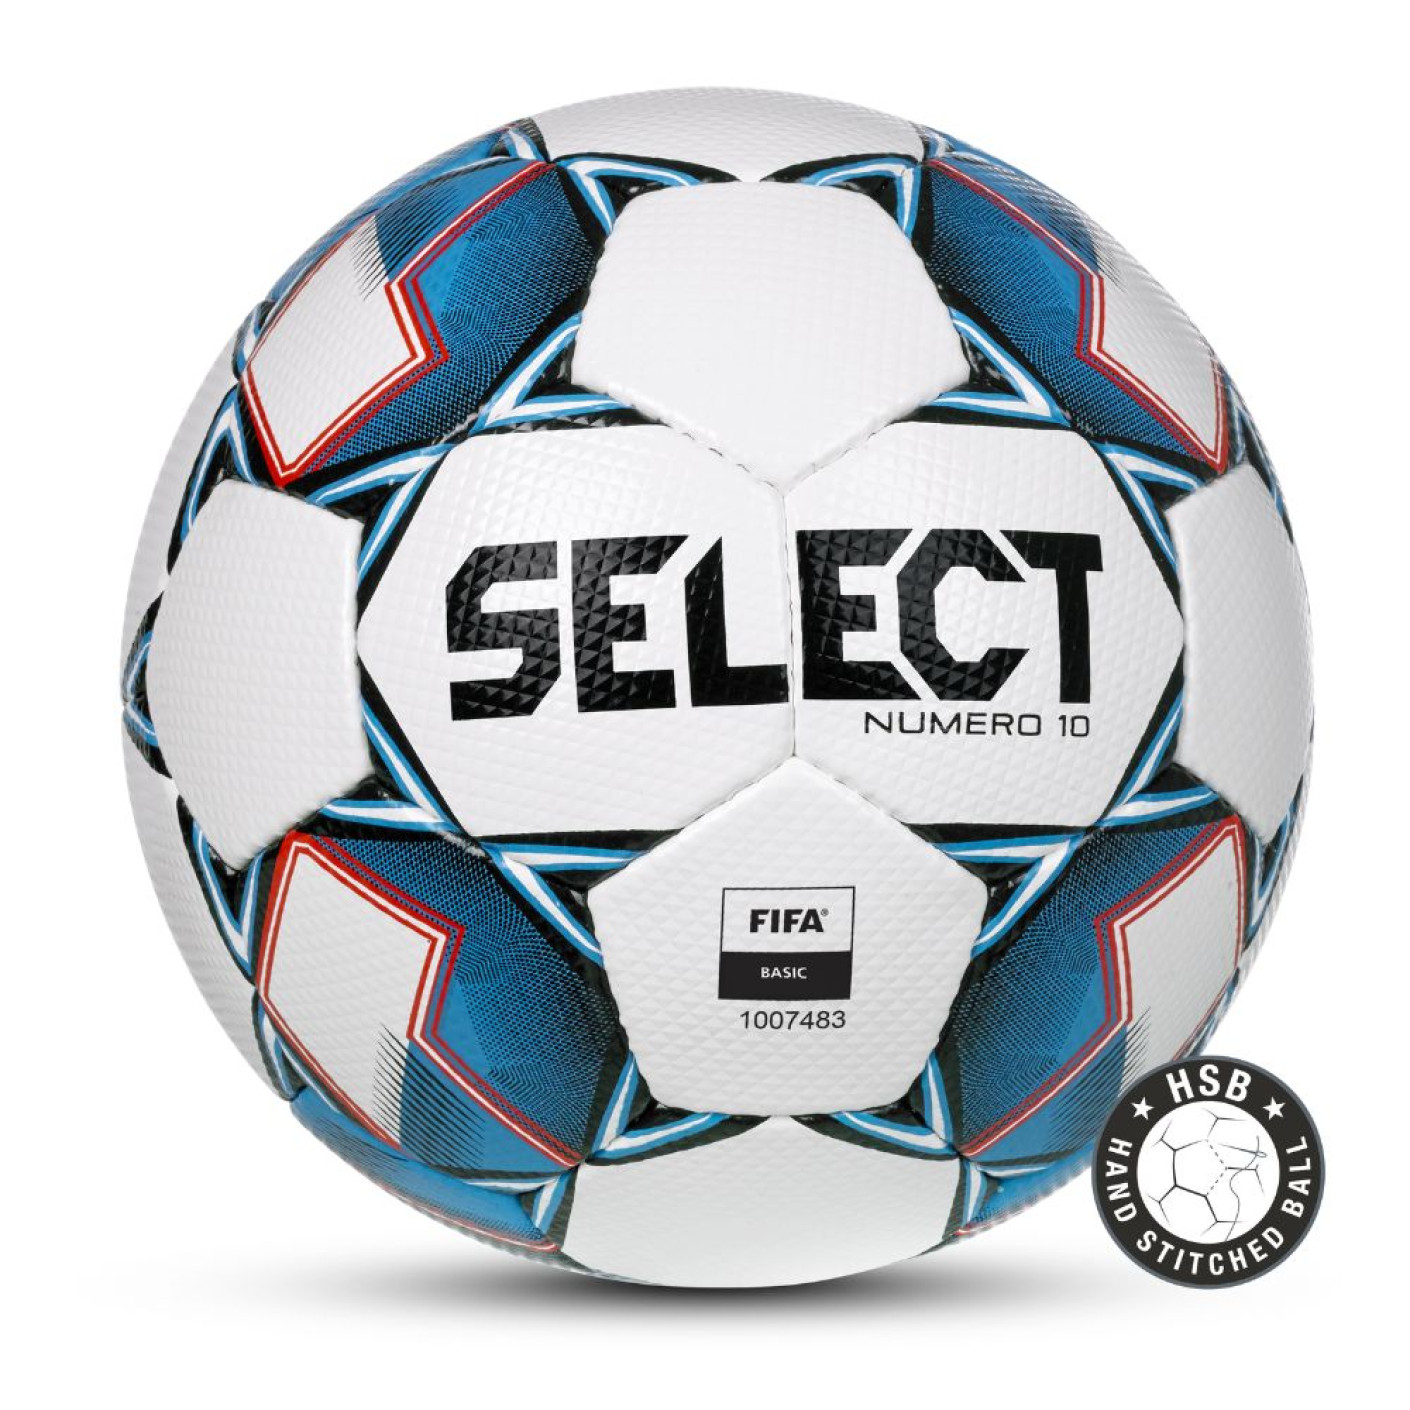 Select Numero 10 v22 Ballon de Football Taille 5 Blanc Bleu